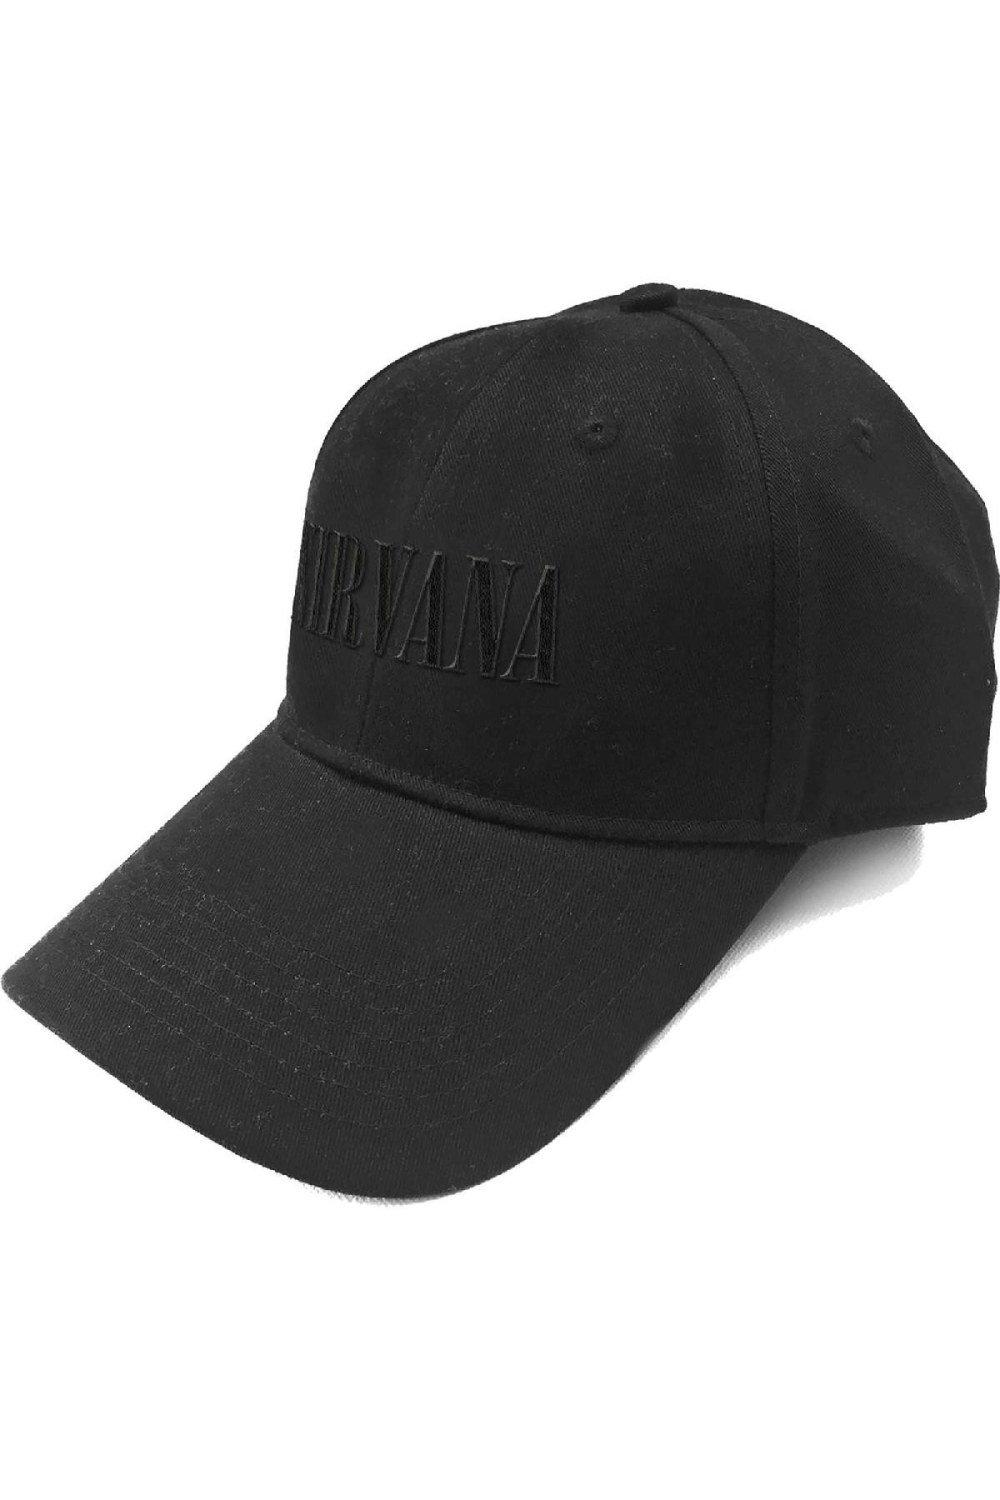 цена Бейсбольная кепка с текстовым логотипом Nirvana, черный